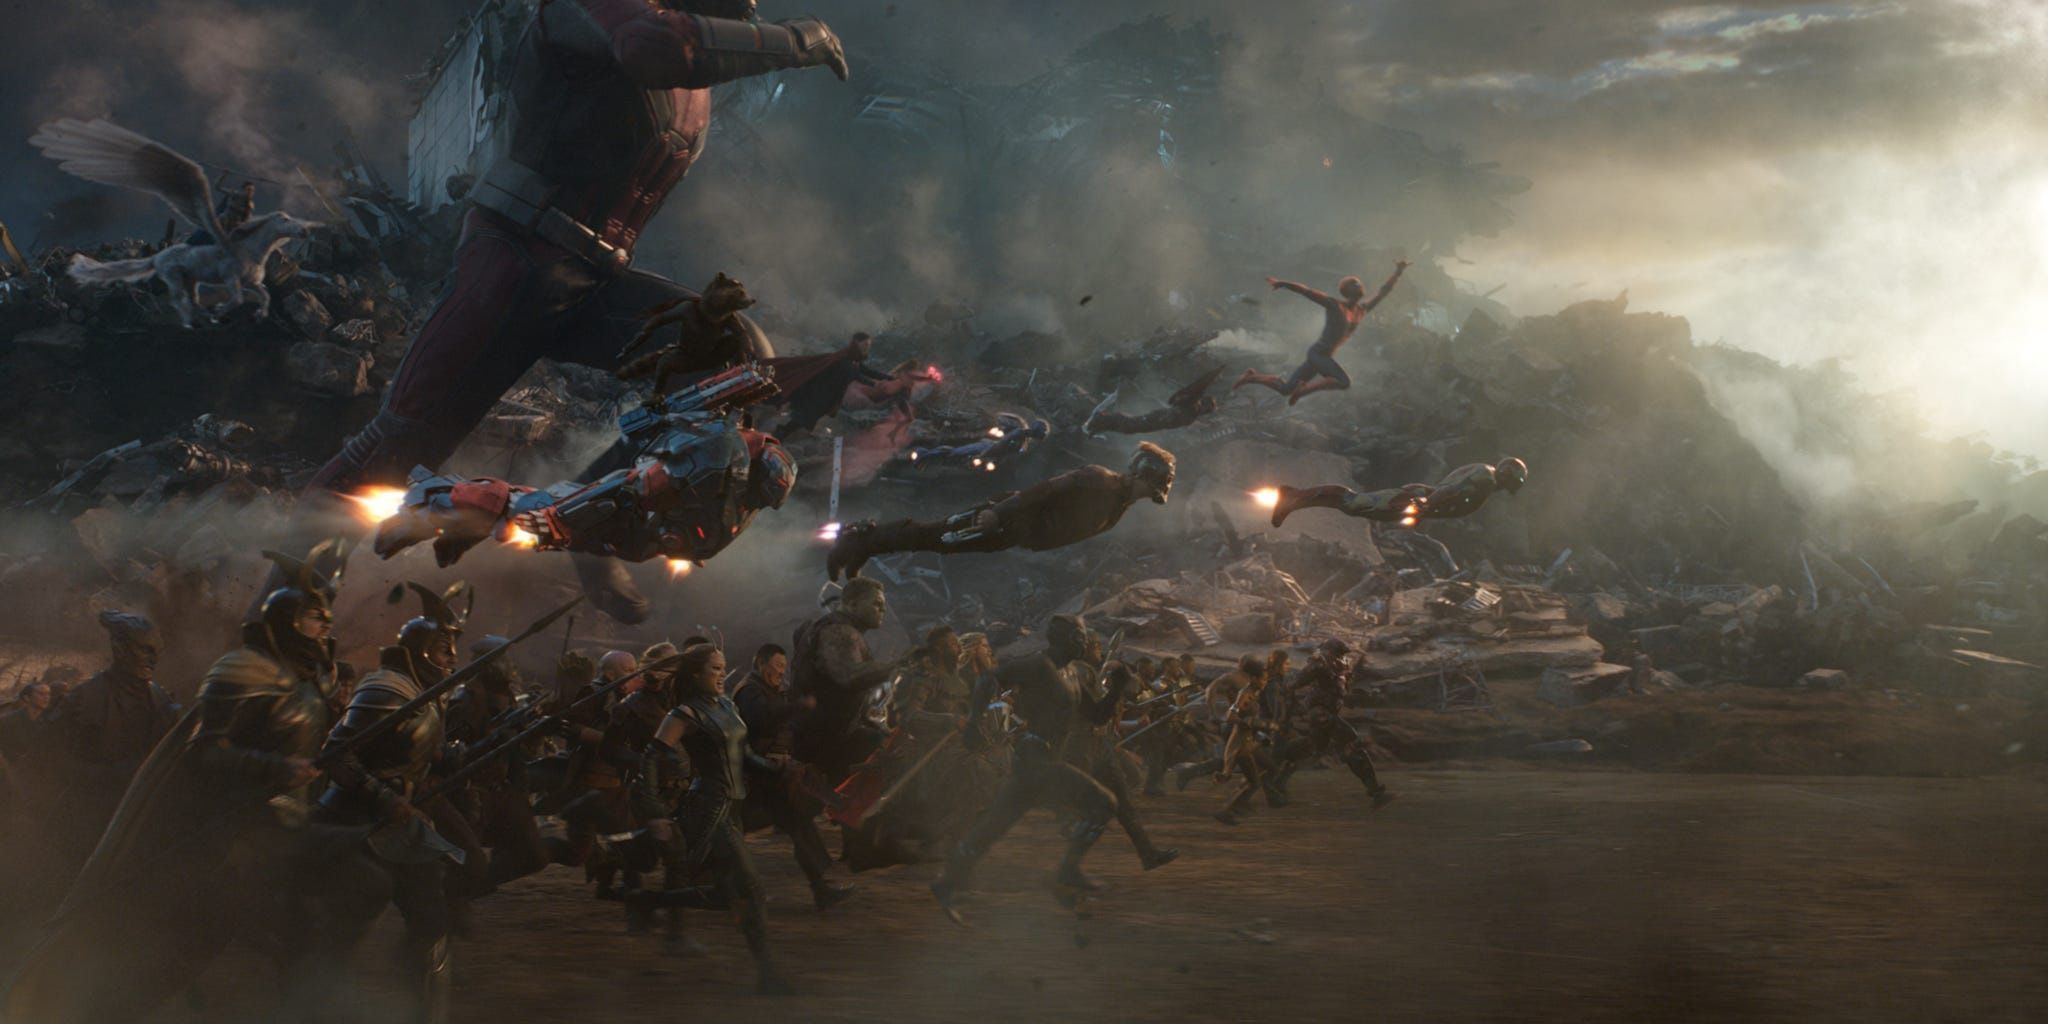 Battle of Earth, Avengers: Endgame